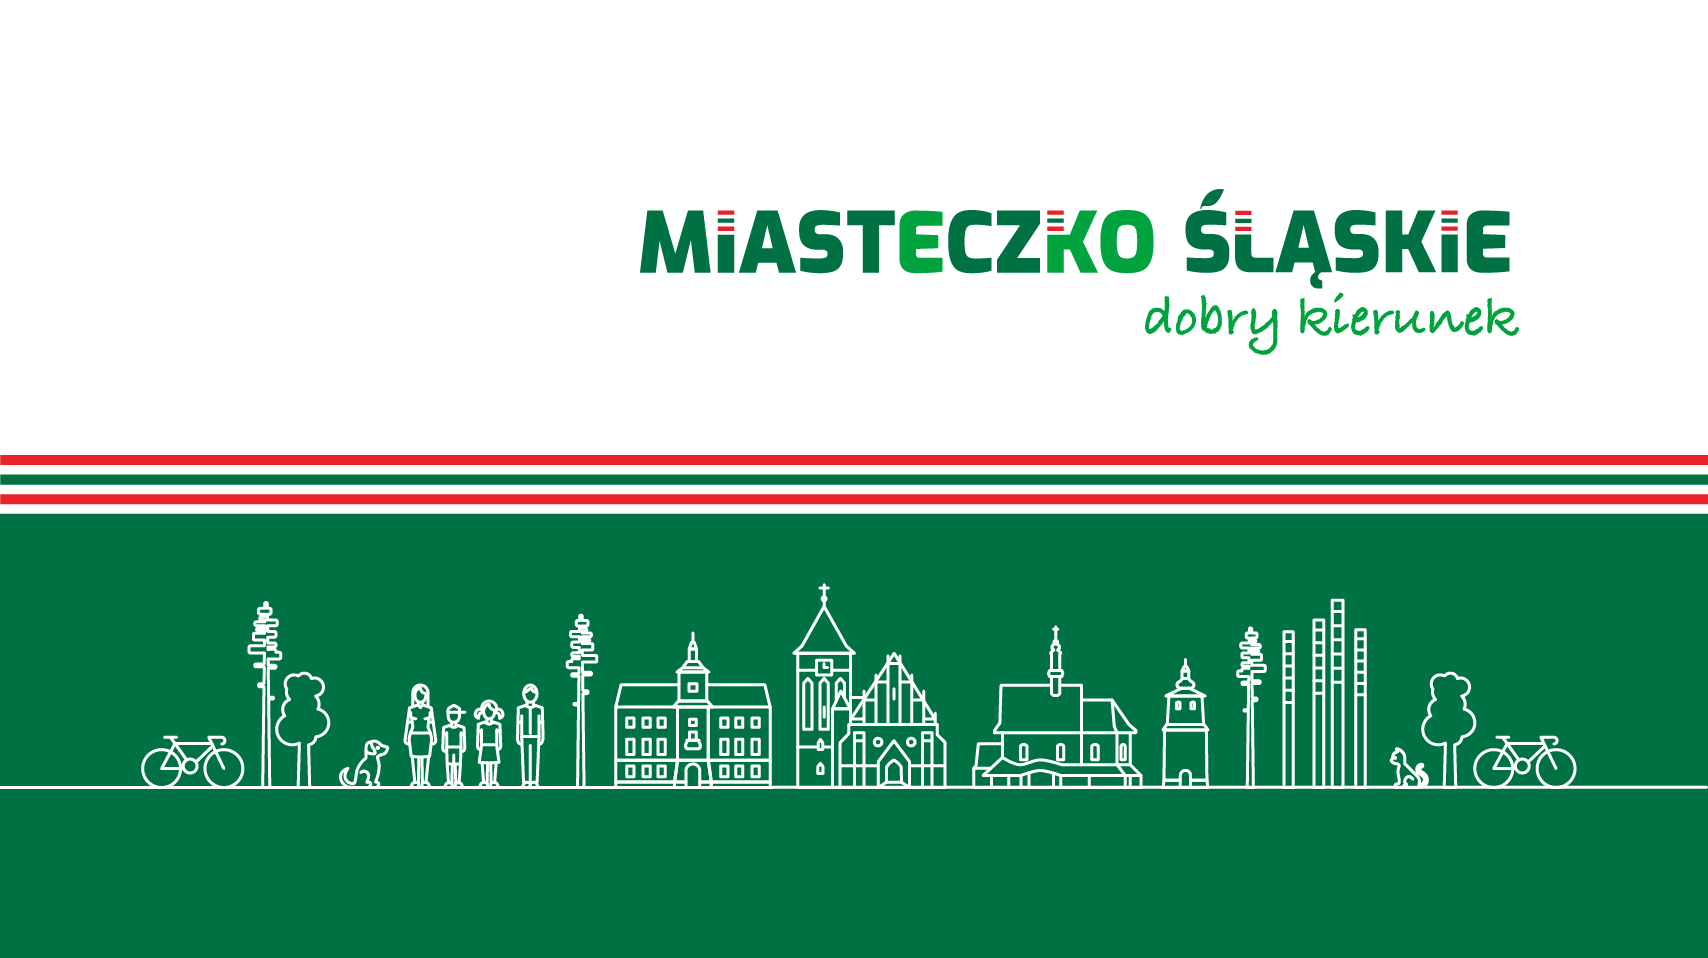 Obwieszczenie Burmistrza Miasta Miasteczko Śląskie